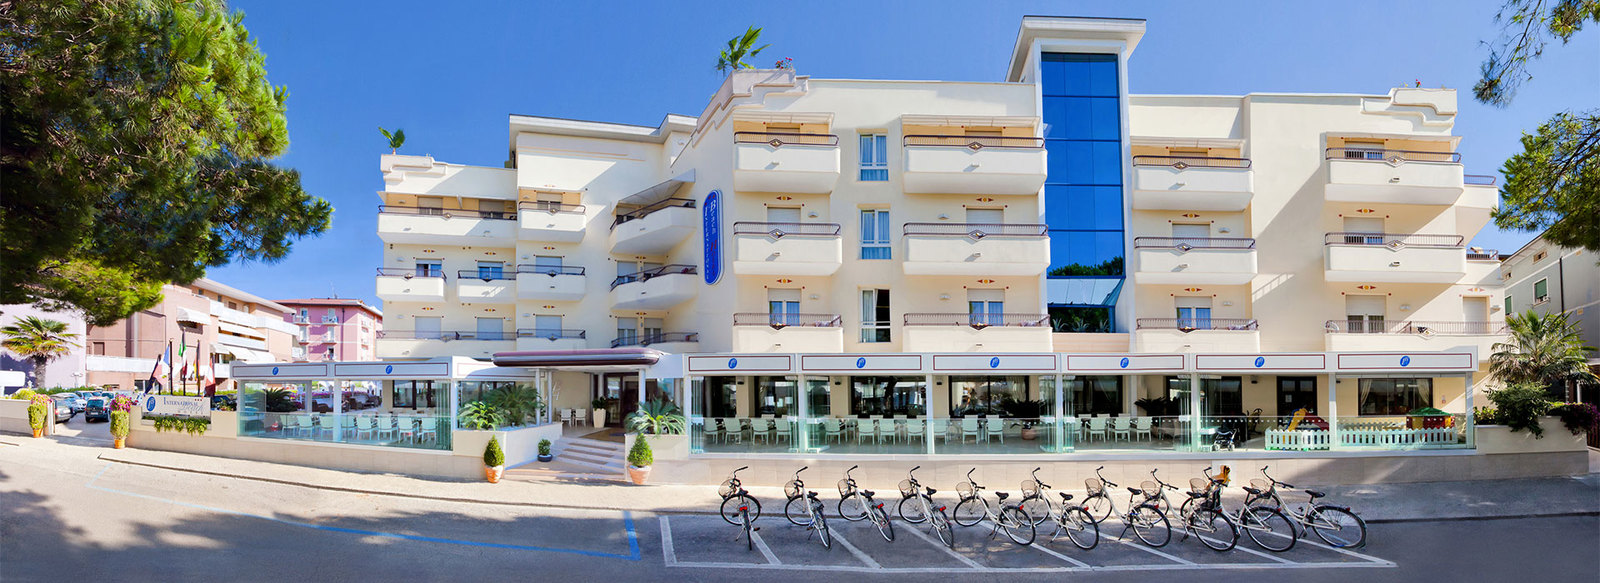 Elegante Hotel 3*S in centro a Caorle, a 50 metri dal mare